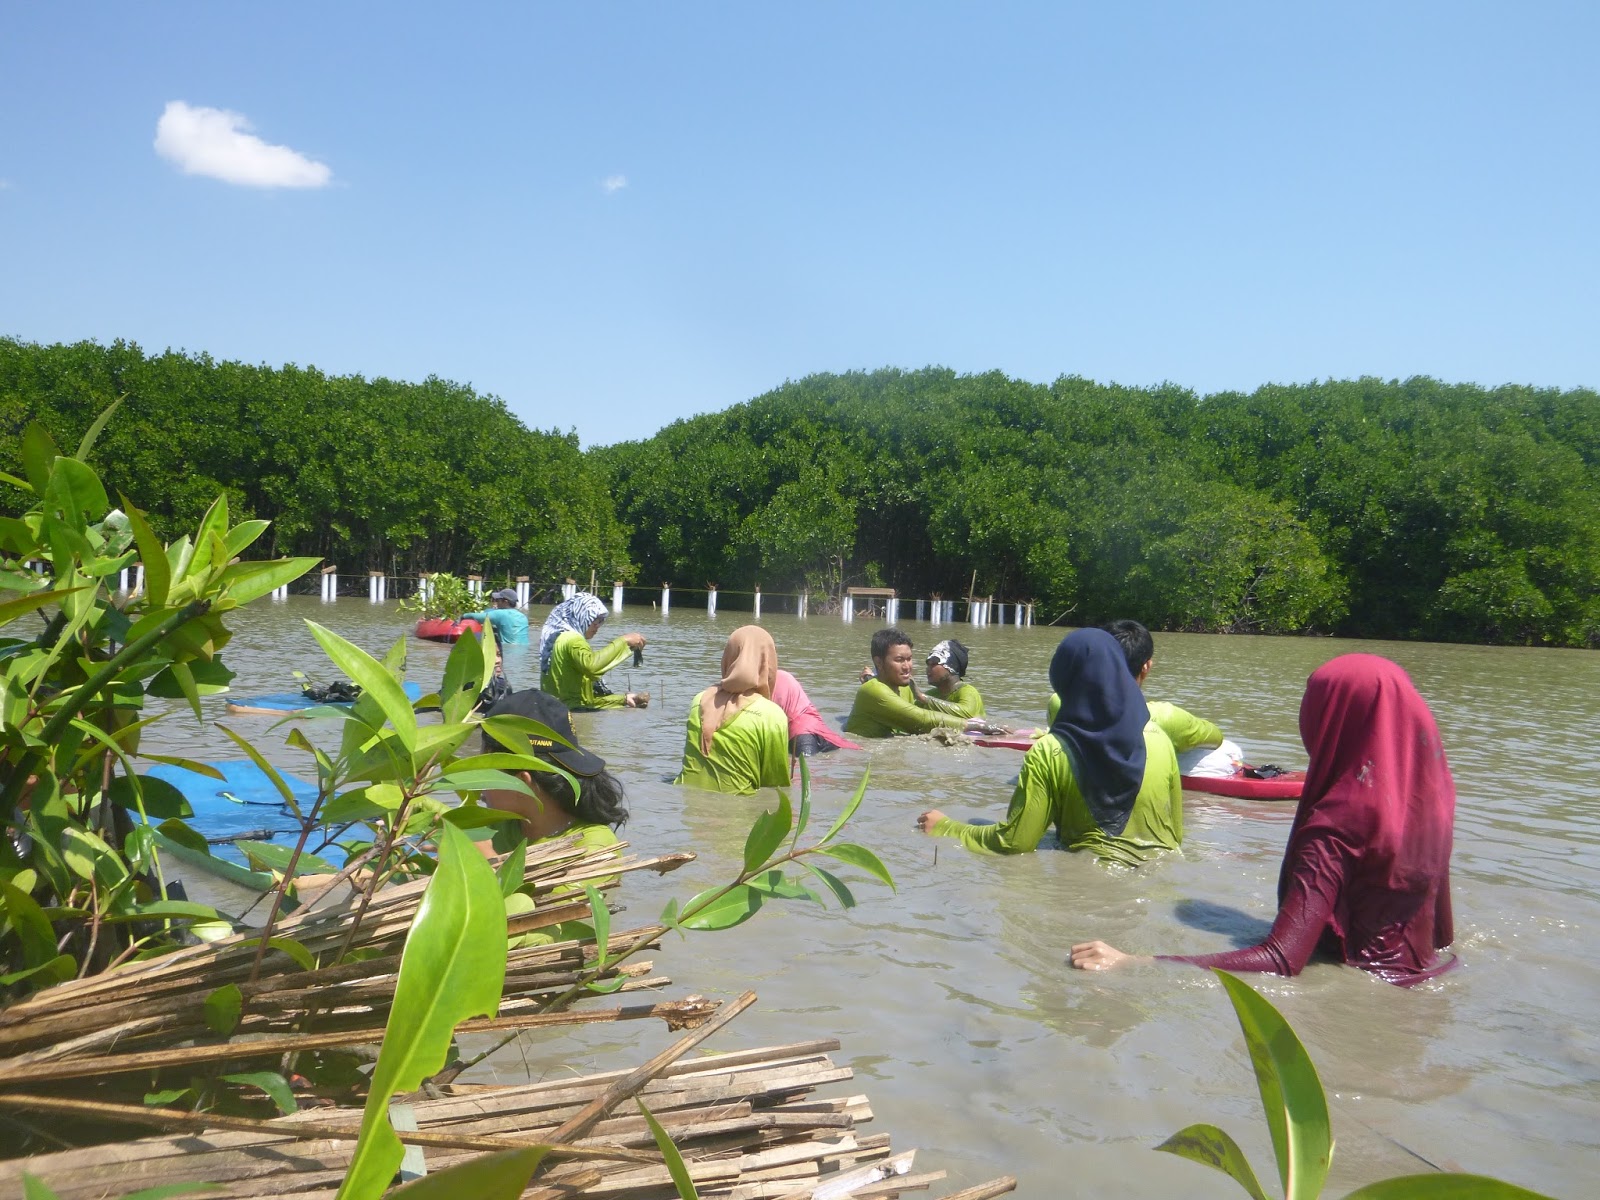 dengan penanaman mangrove berdampak positif pada terjaganya wilayah pesisir dari abrasi yang selalu mengancam sebagian wilayah budidaya perikanan